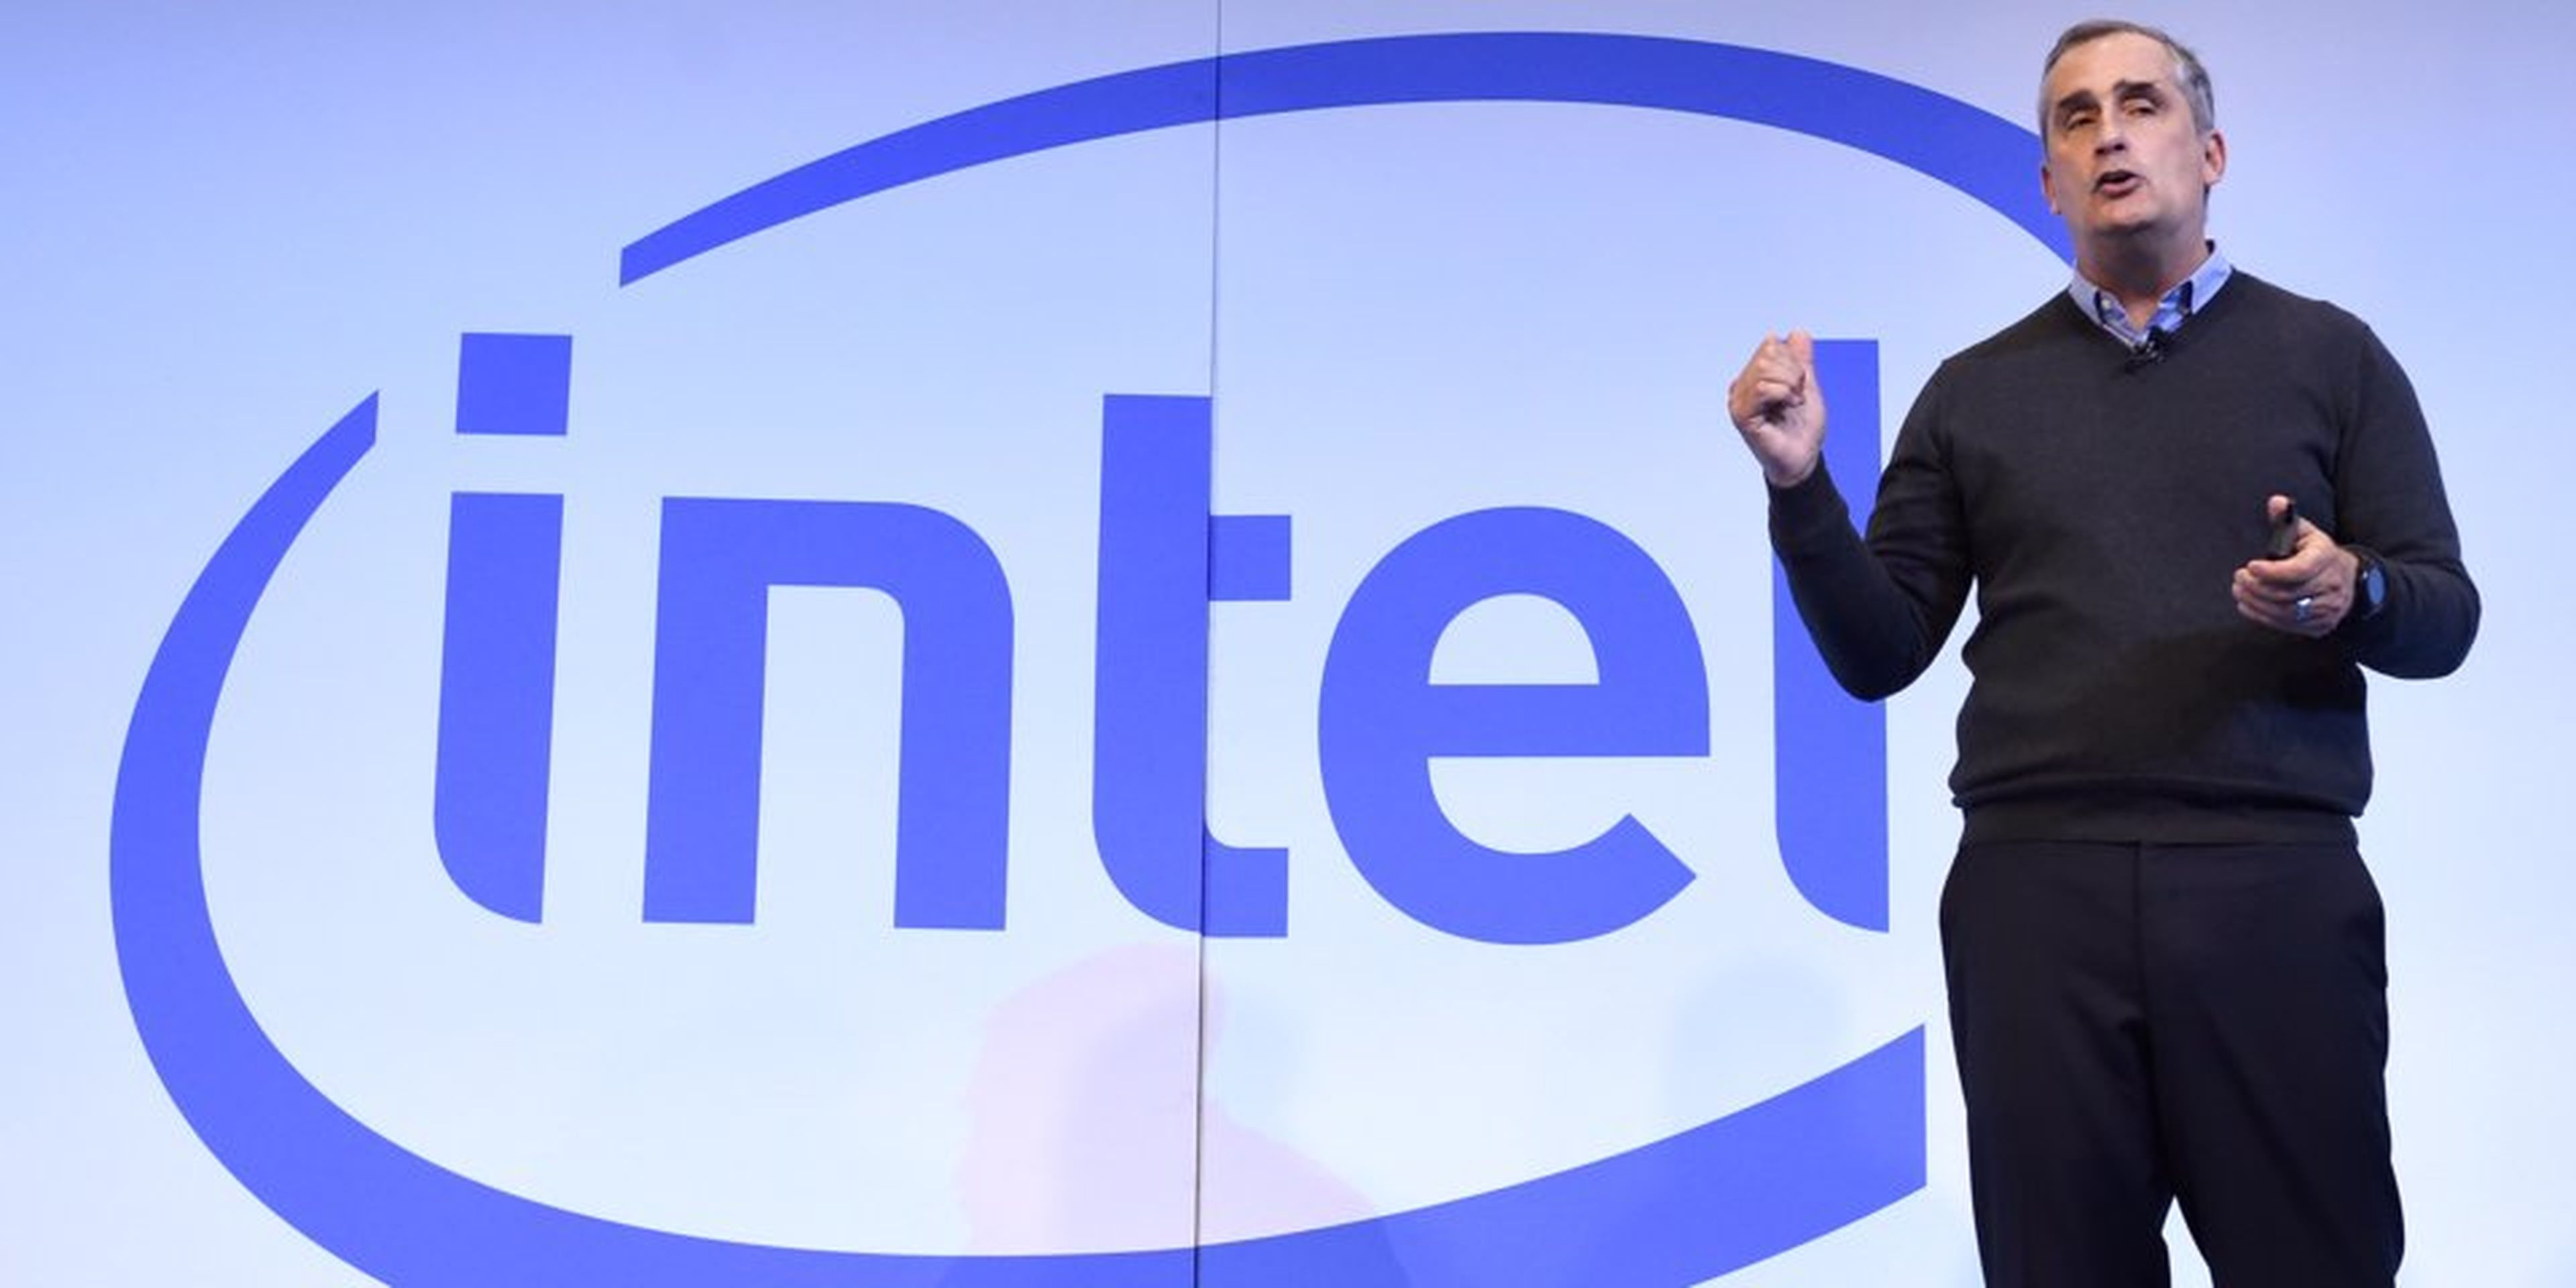 Brian Krzanich, exCEO de Intel